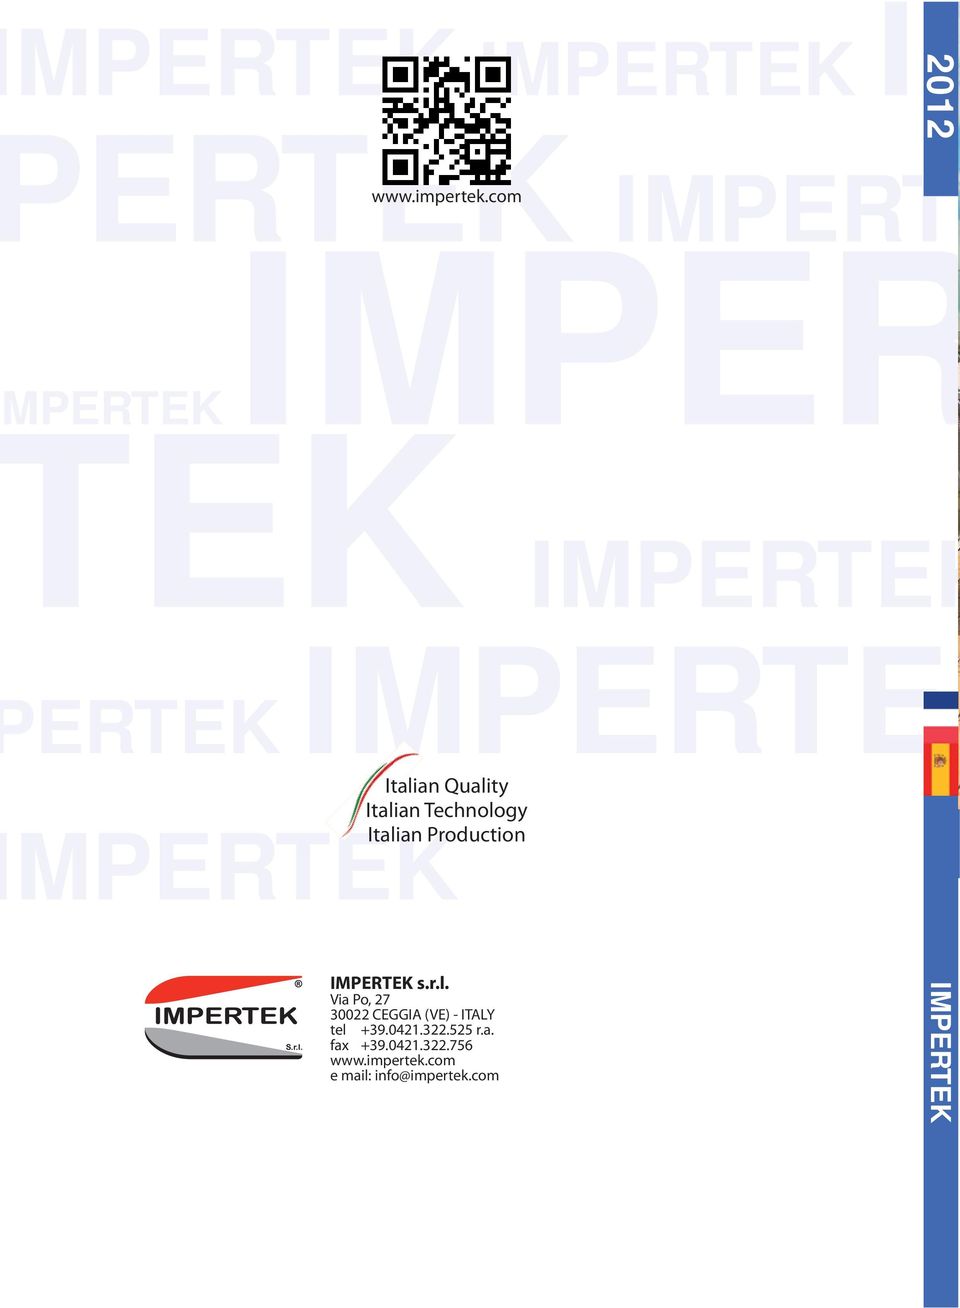 Technology Italian Production MPERTEK IMPERTEK s.r.l. Via Po, 27 30022 CEGGIA (VE) - ITALY tel +39.